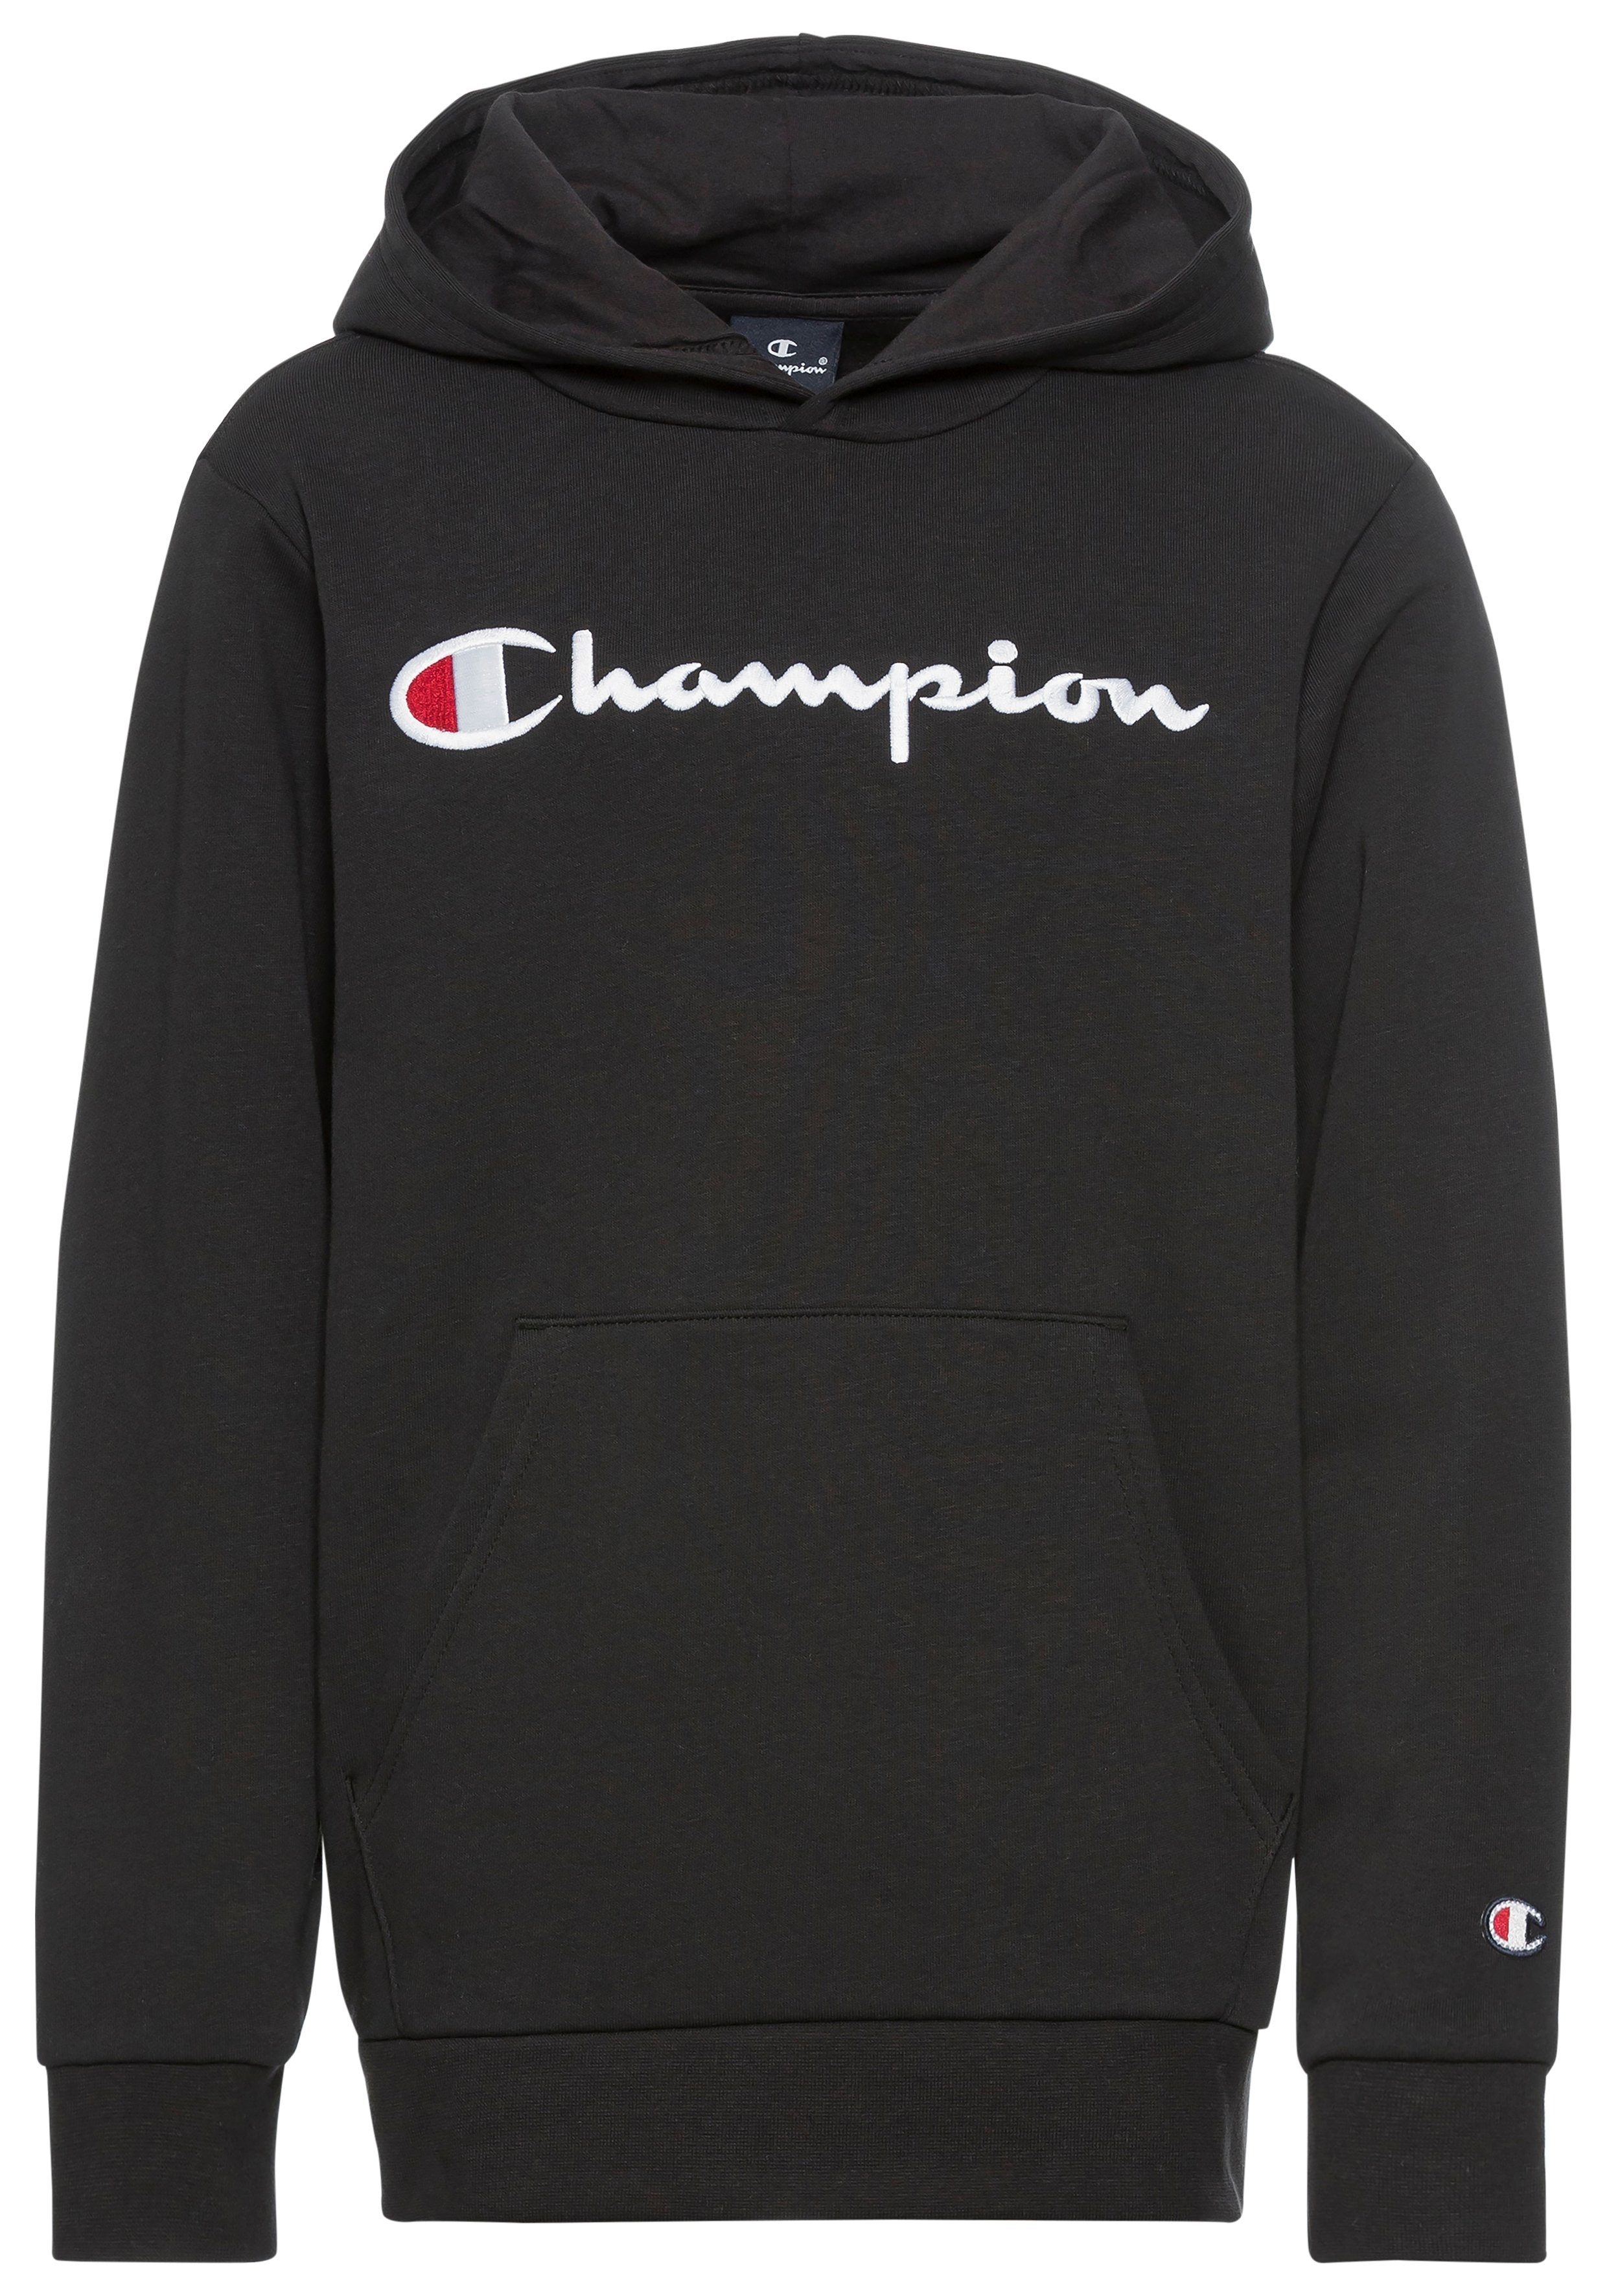 Champion schwarz Sweatshirt Icons Kapuzensweatshirt Hooded